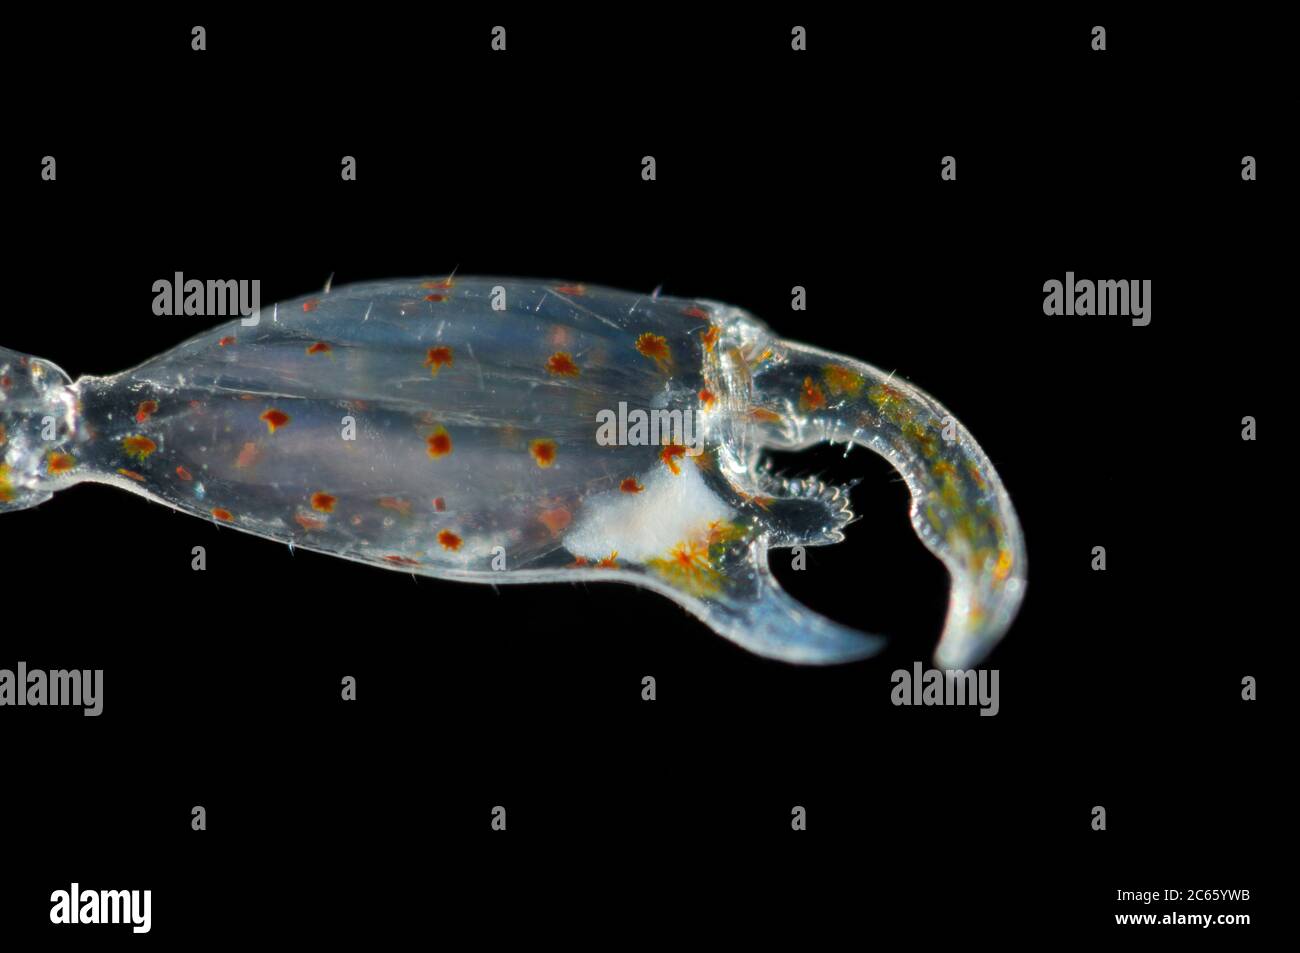 La tenera o le tennole di Phronima, l'anfipode di pramite, è un piccolo anfipod ipperiidide traslucido della famiglia dei Phronimidae. La Phronima si vede solo in natura a grandi profondità, [dimensione del singolo organismo: 2,5 cm] Foto Stock